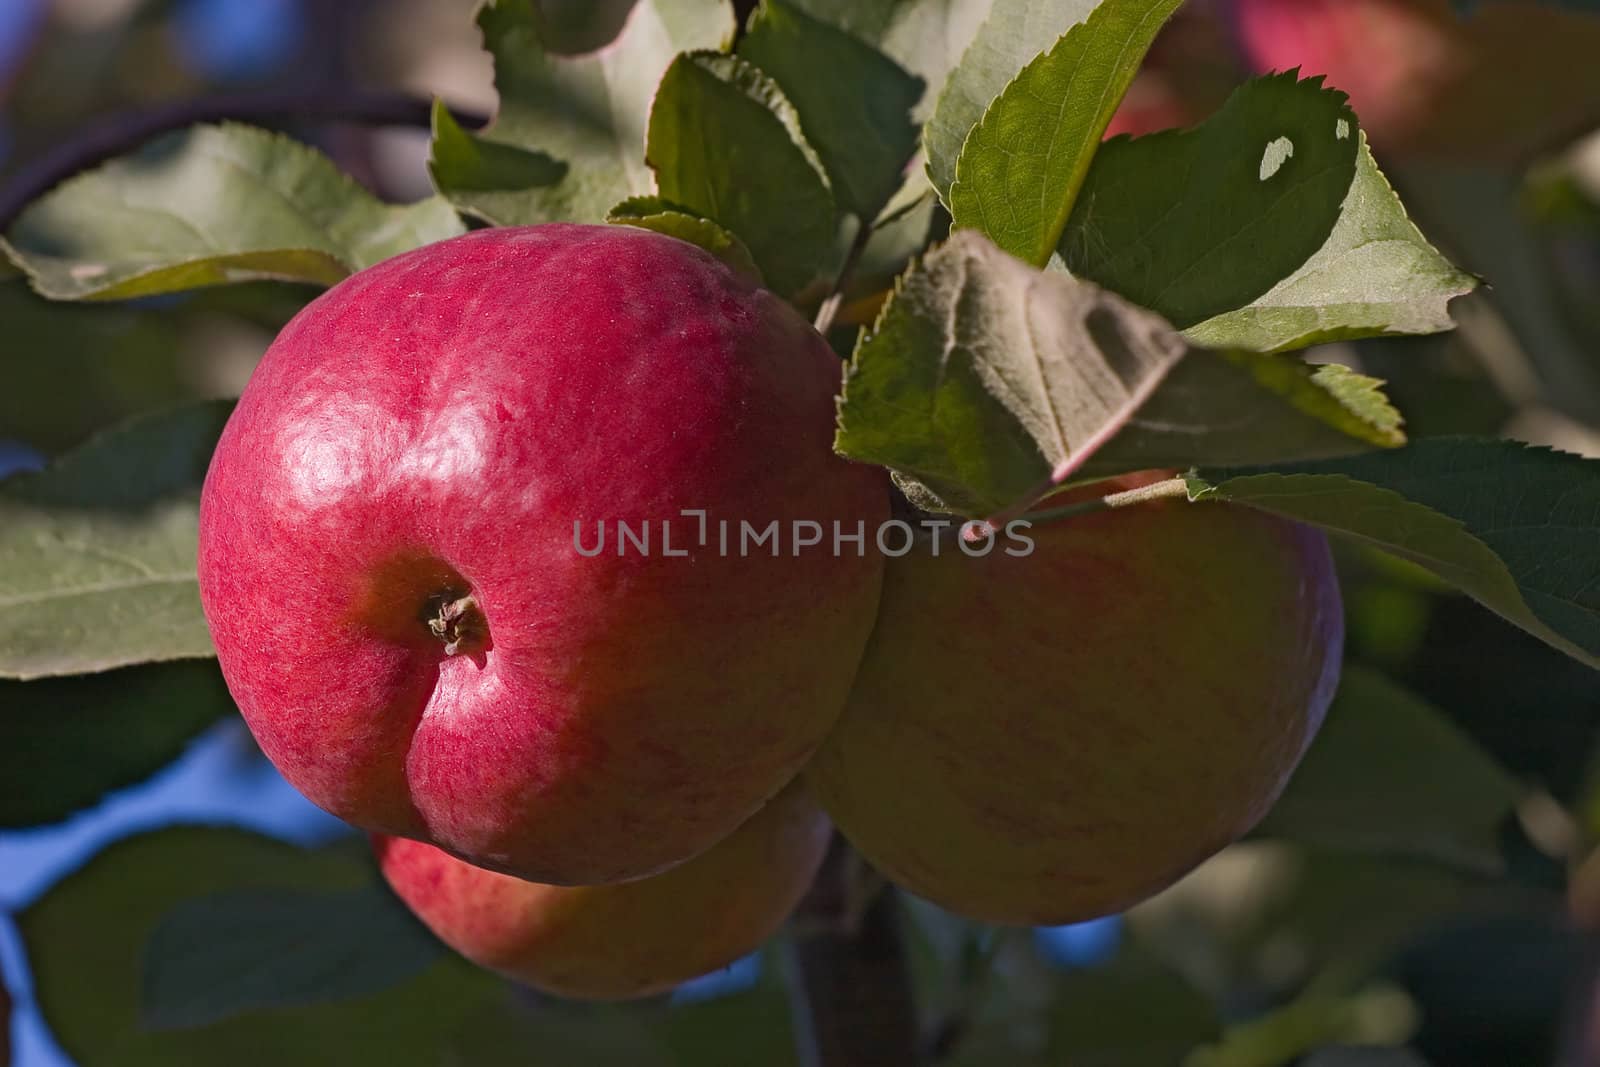 Apples by Ohotnik